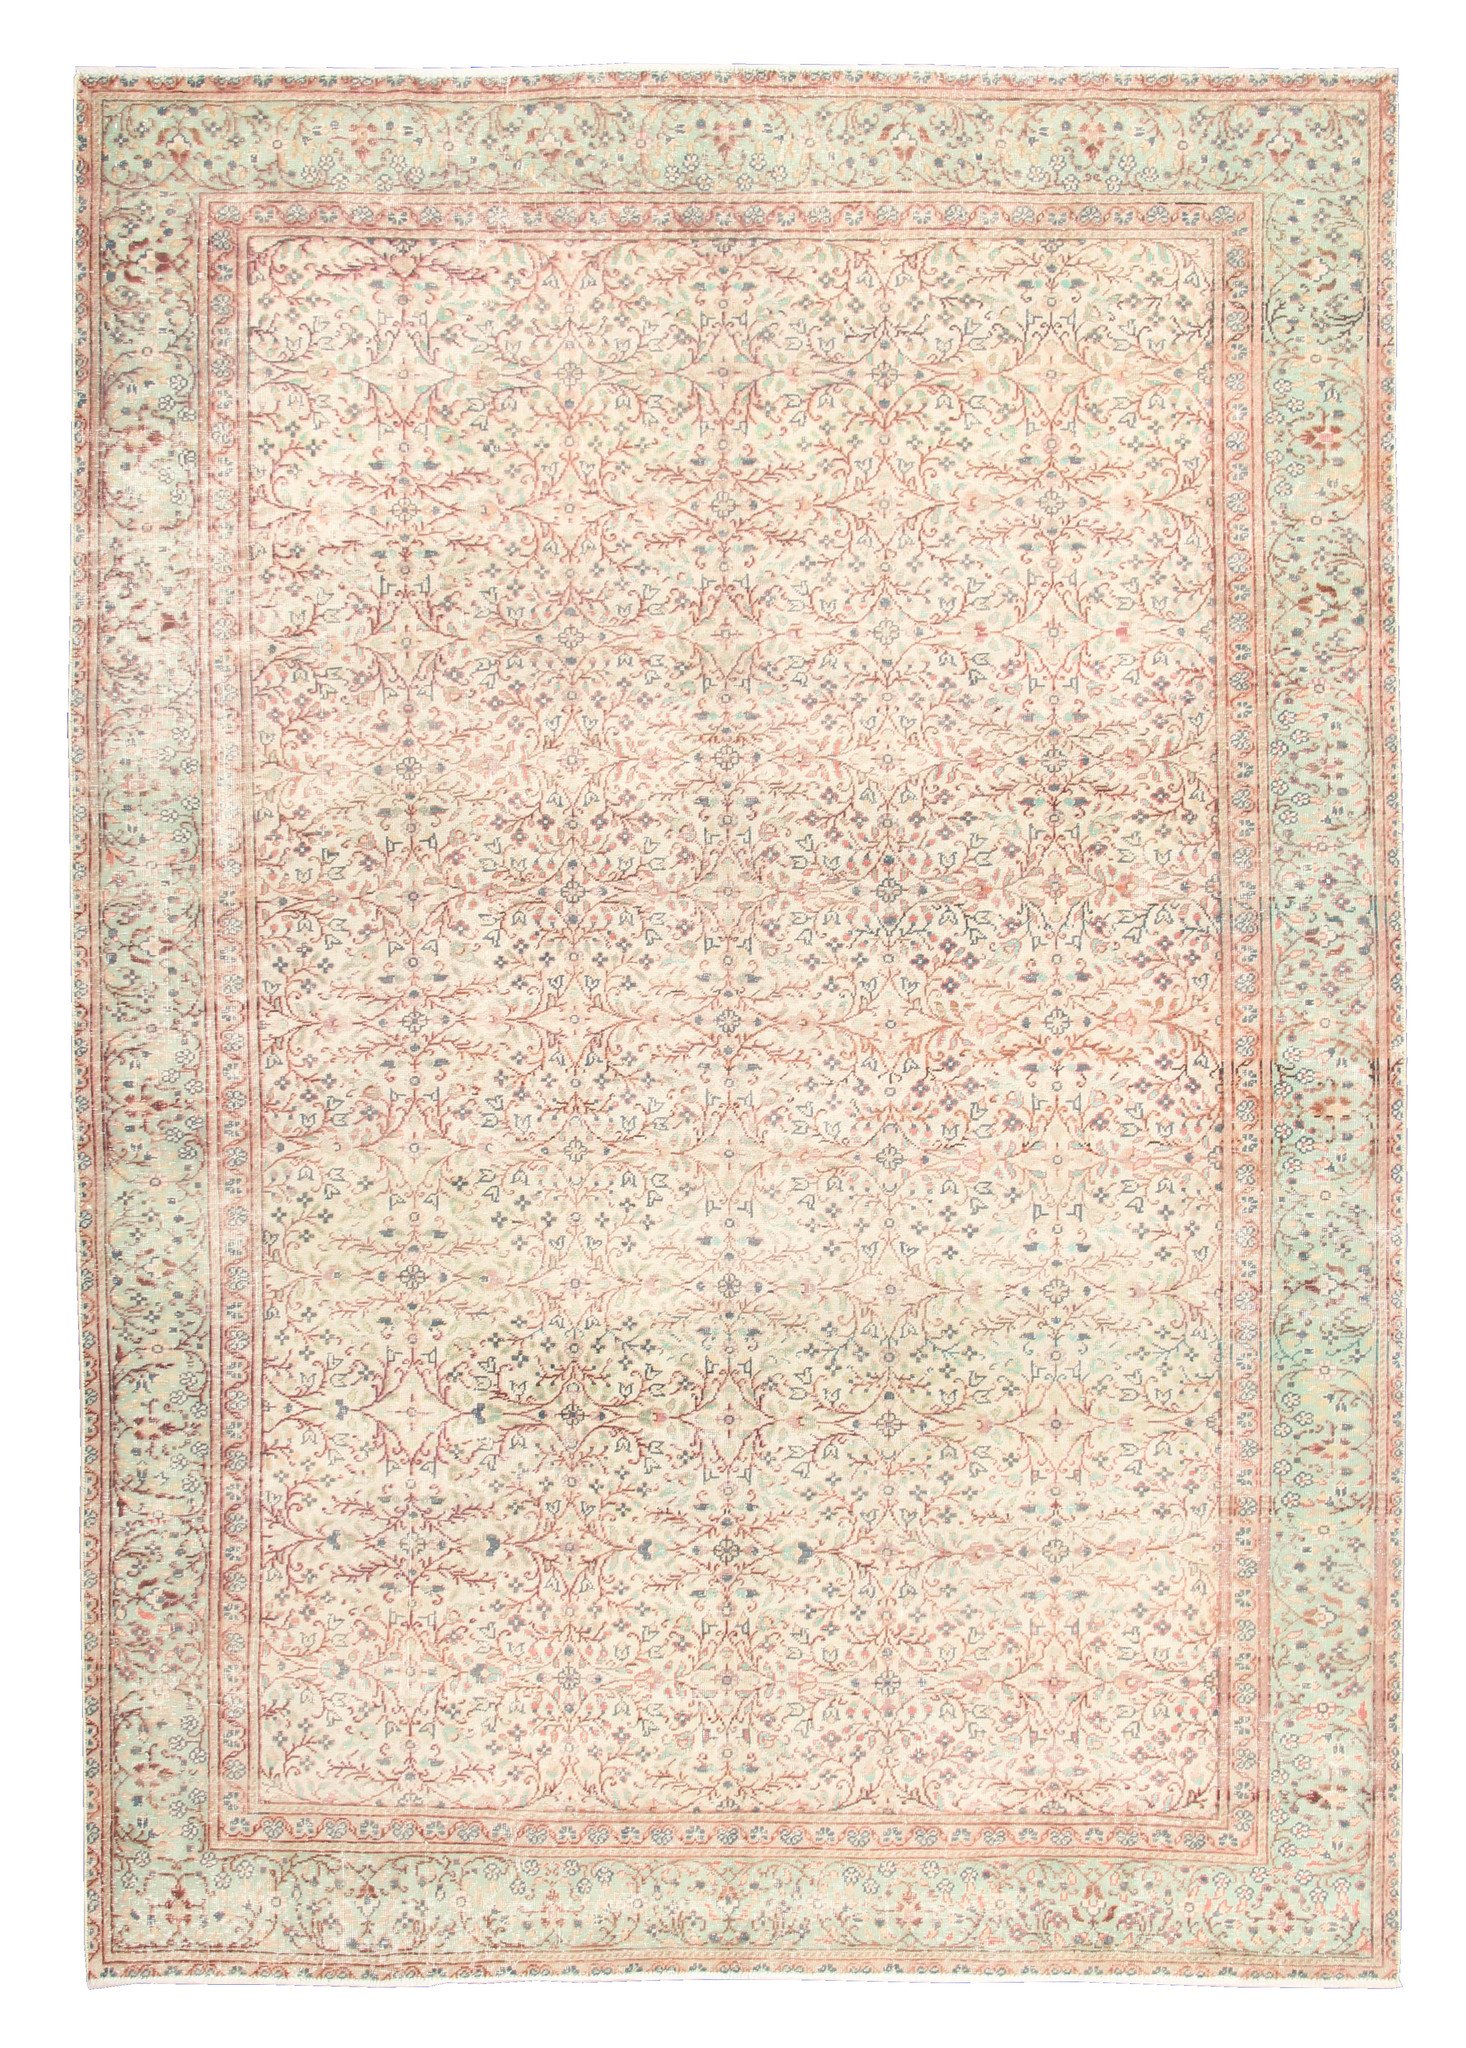  Handgknüpfter  vintage  teppich  280 x 195 cm